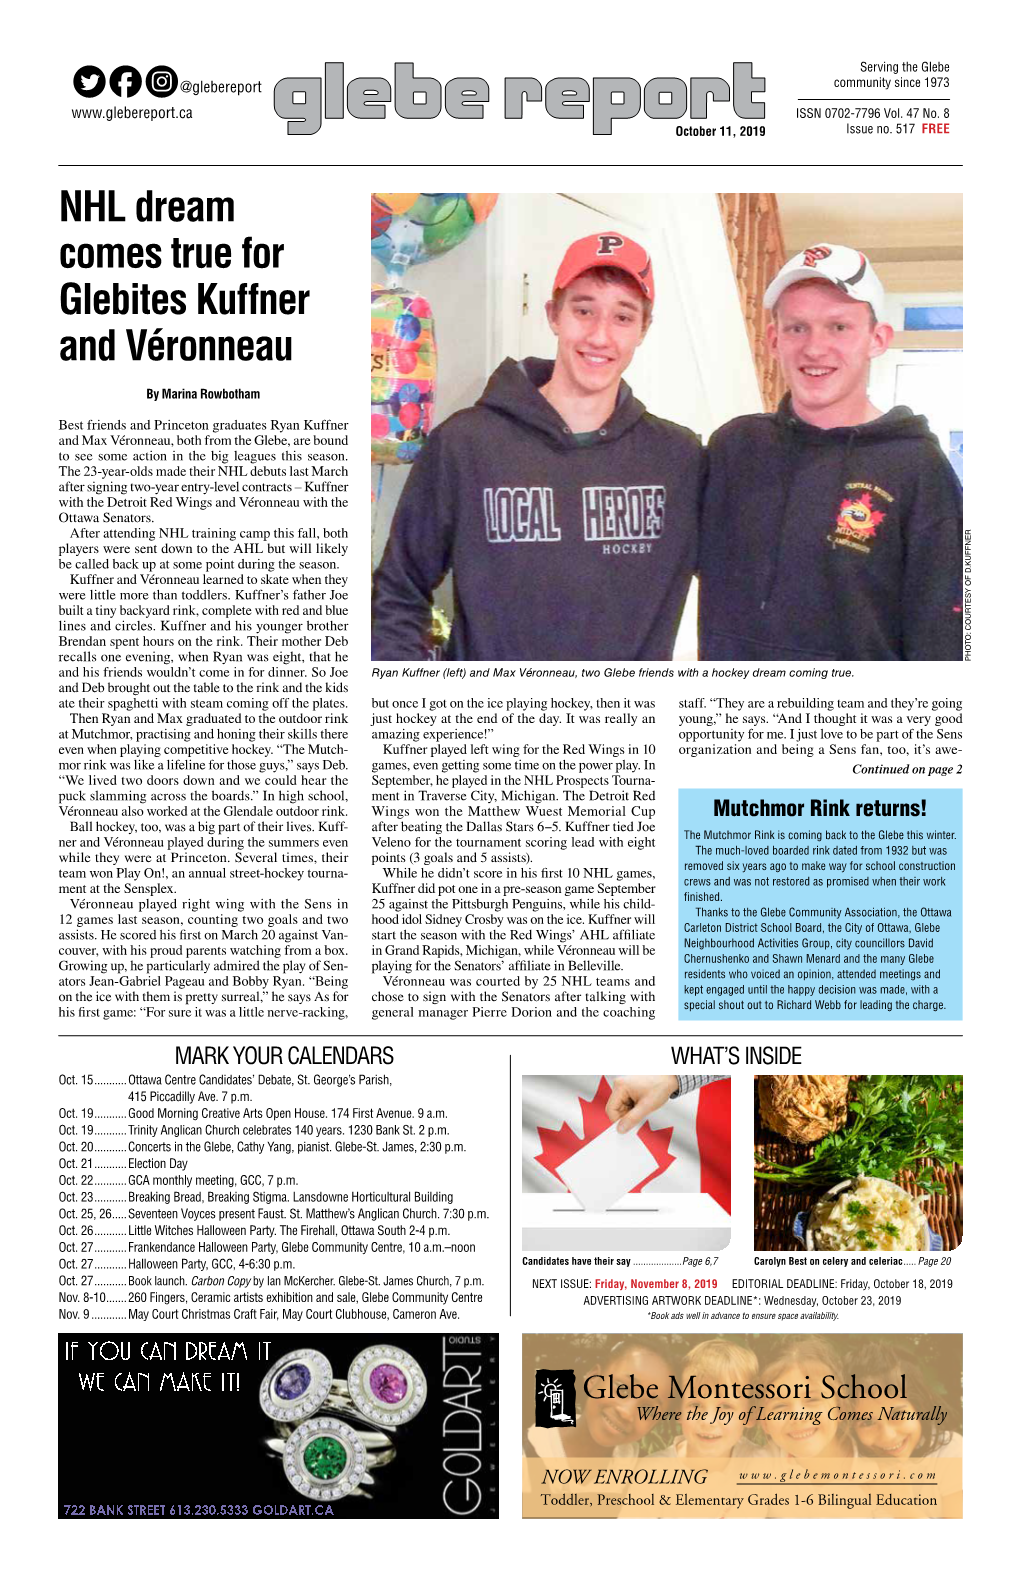 NHL Dream Comes True for Glebites Kuffner and Véronneau